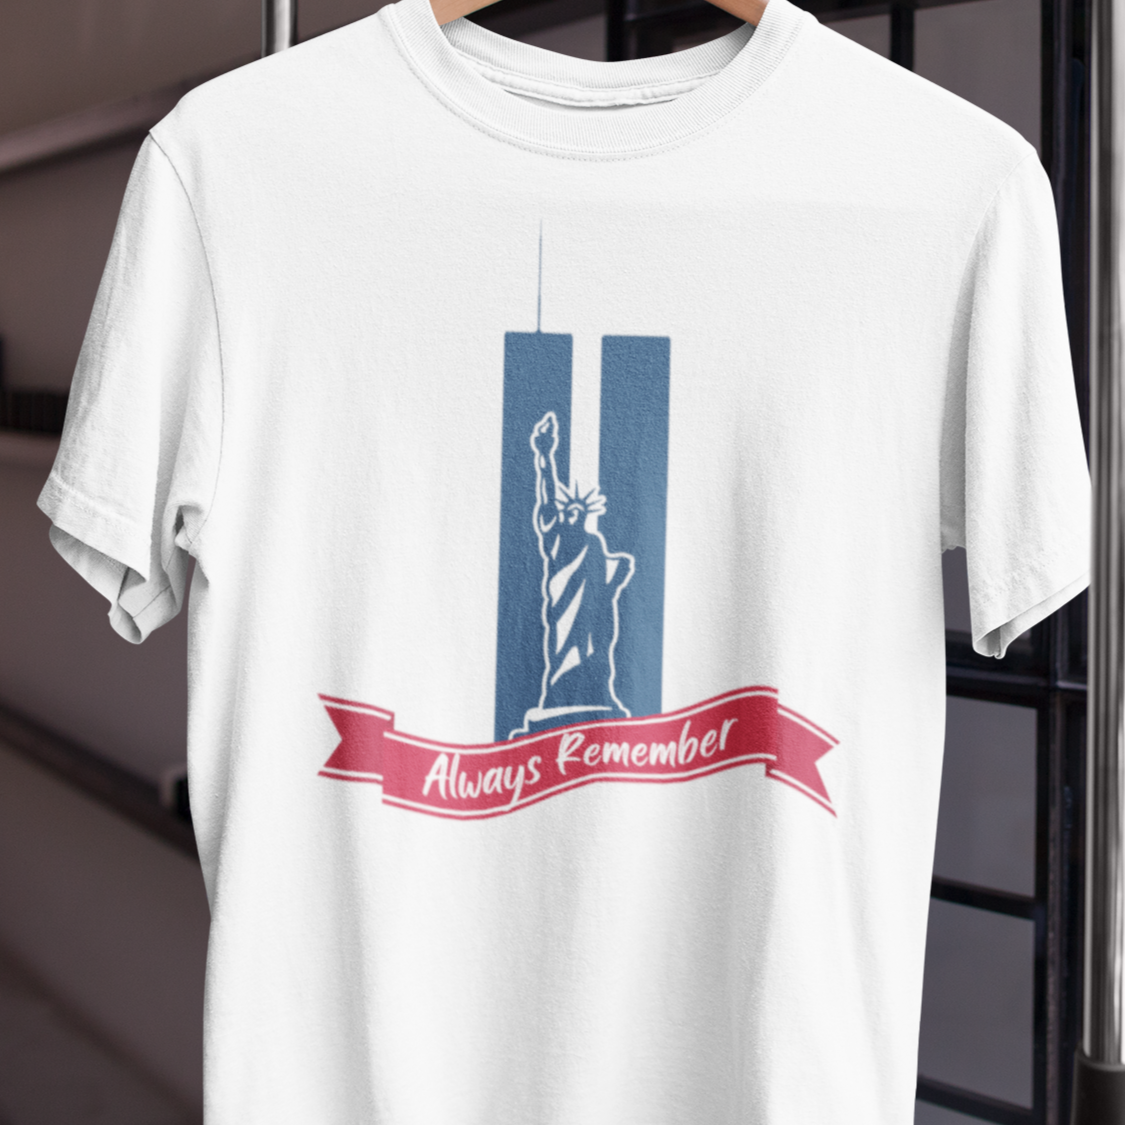 Always Remember - Men's, Women's, Unisex T-Shirt